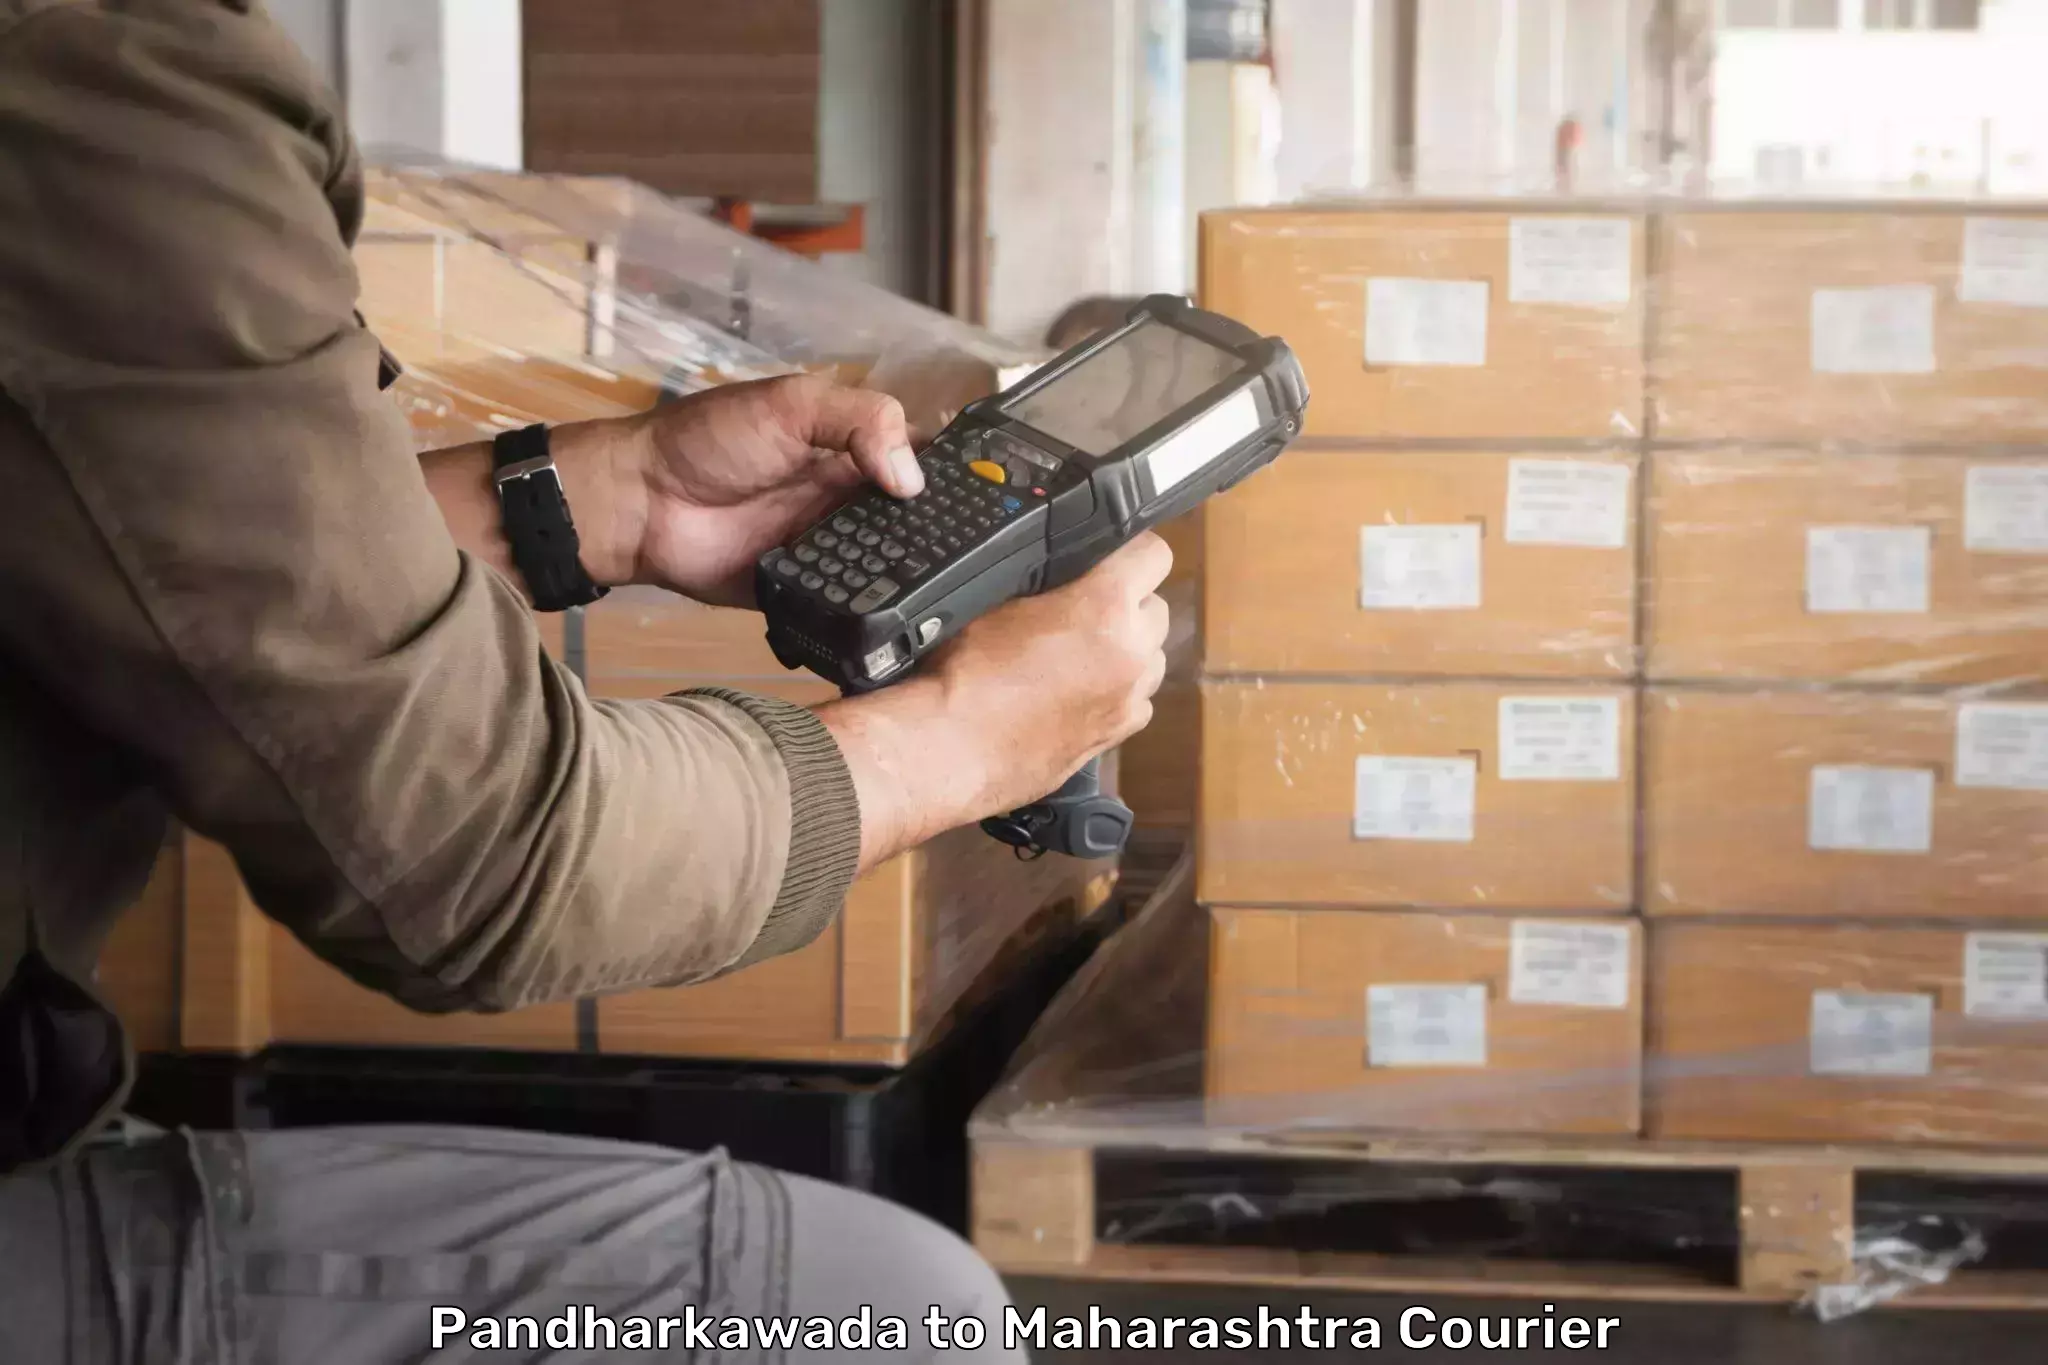 Global shipping solutions Pandharkawada to Maharashtra